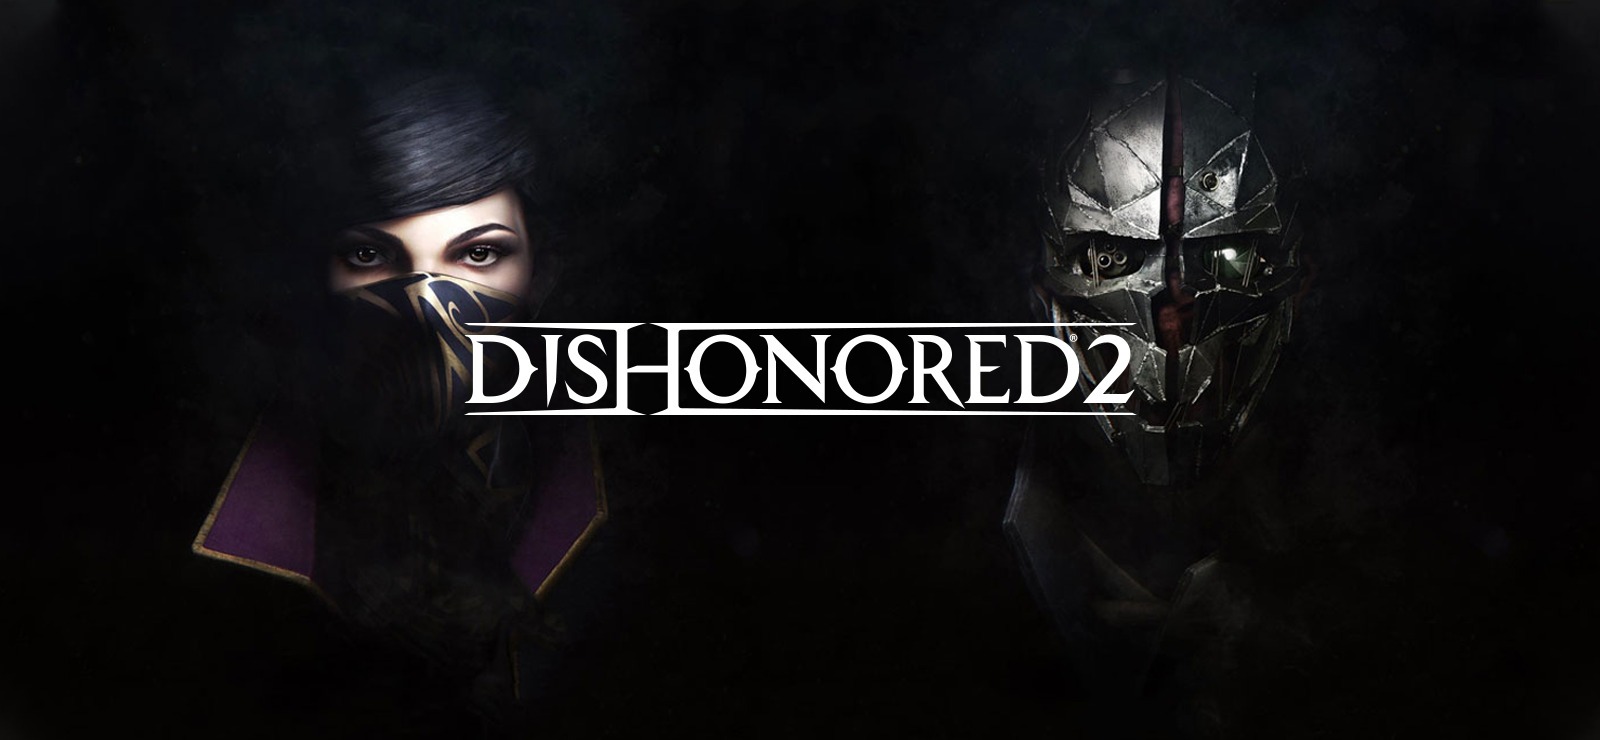  لعبة Dishonored 2.. عروض ألعاب الجمعة البيضاء 80%